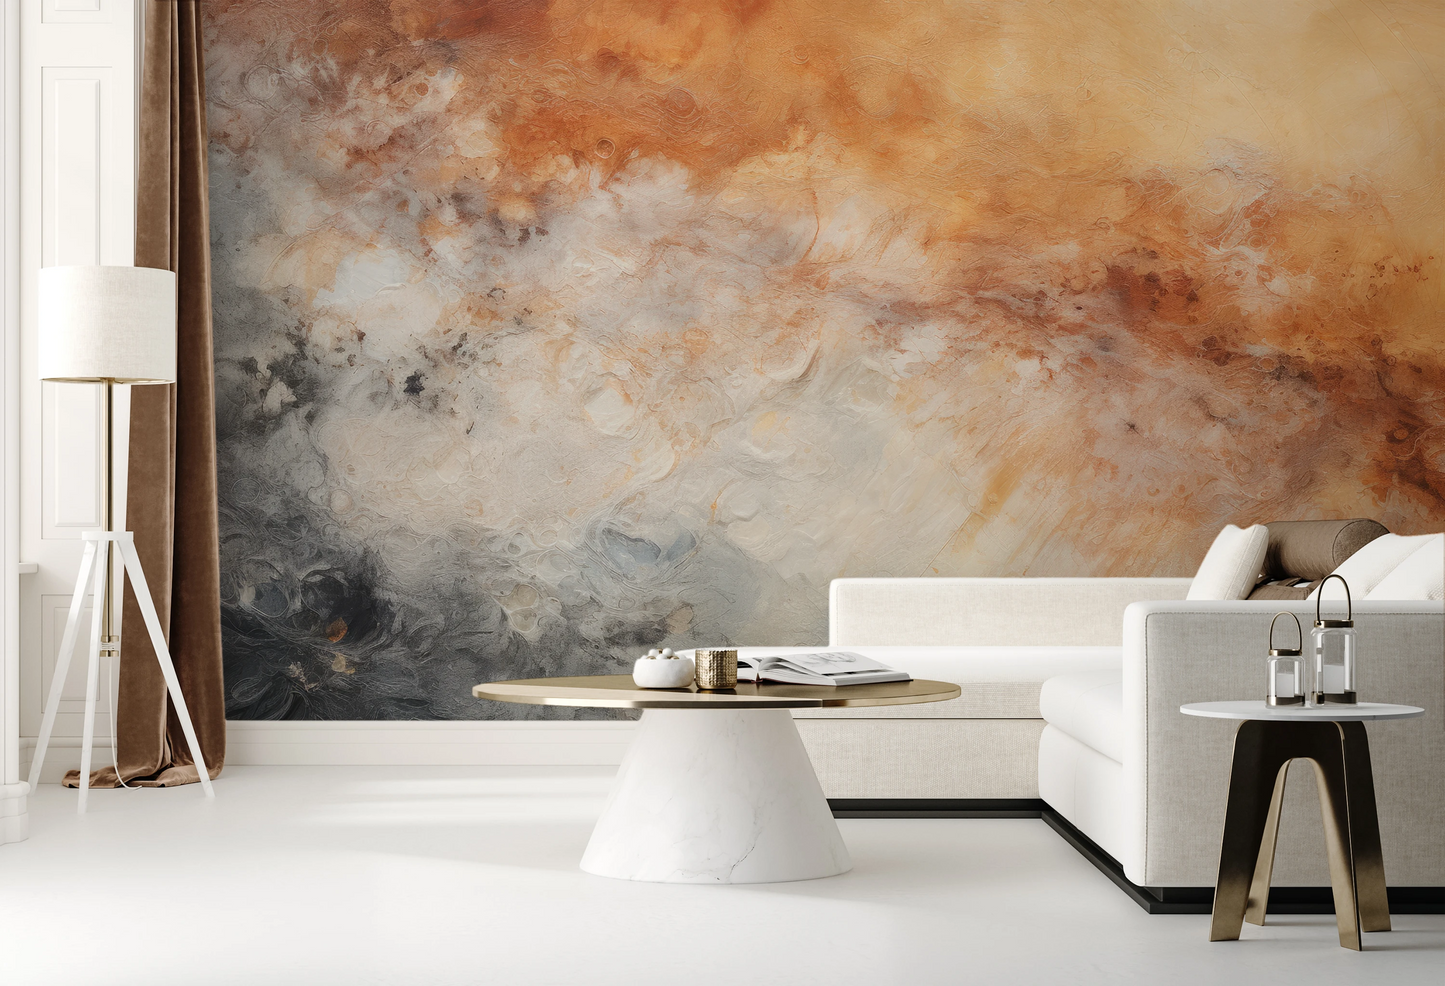 Fototapeta malowana o nazwie Jupiter's Canvas pokazana w aranżacji wnętrza.